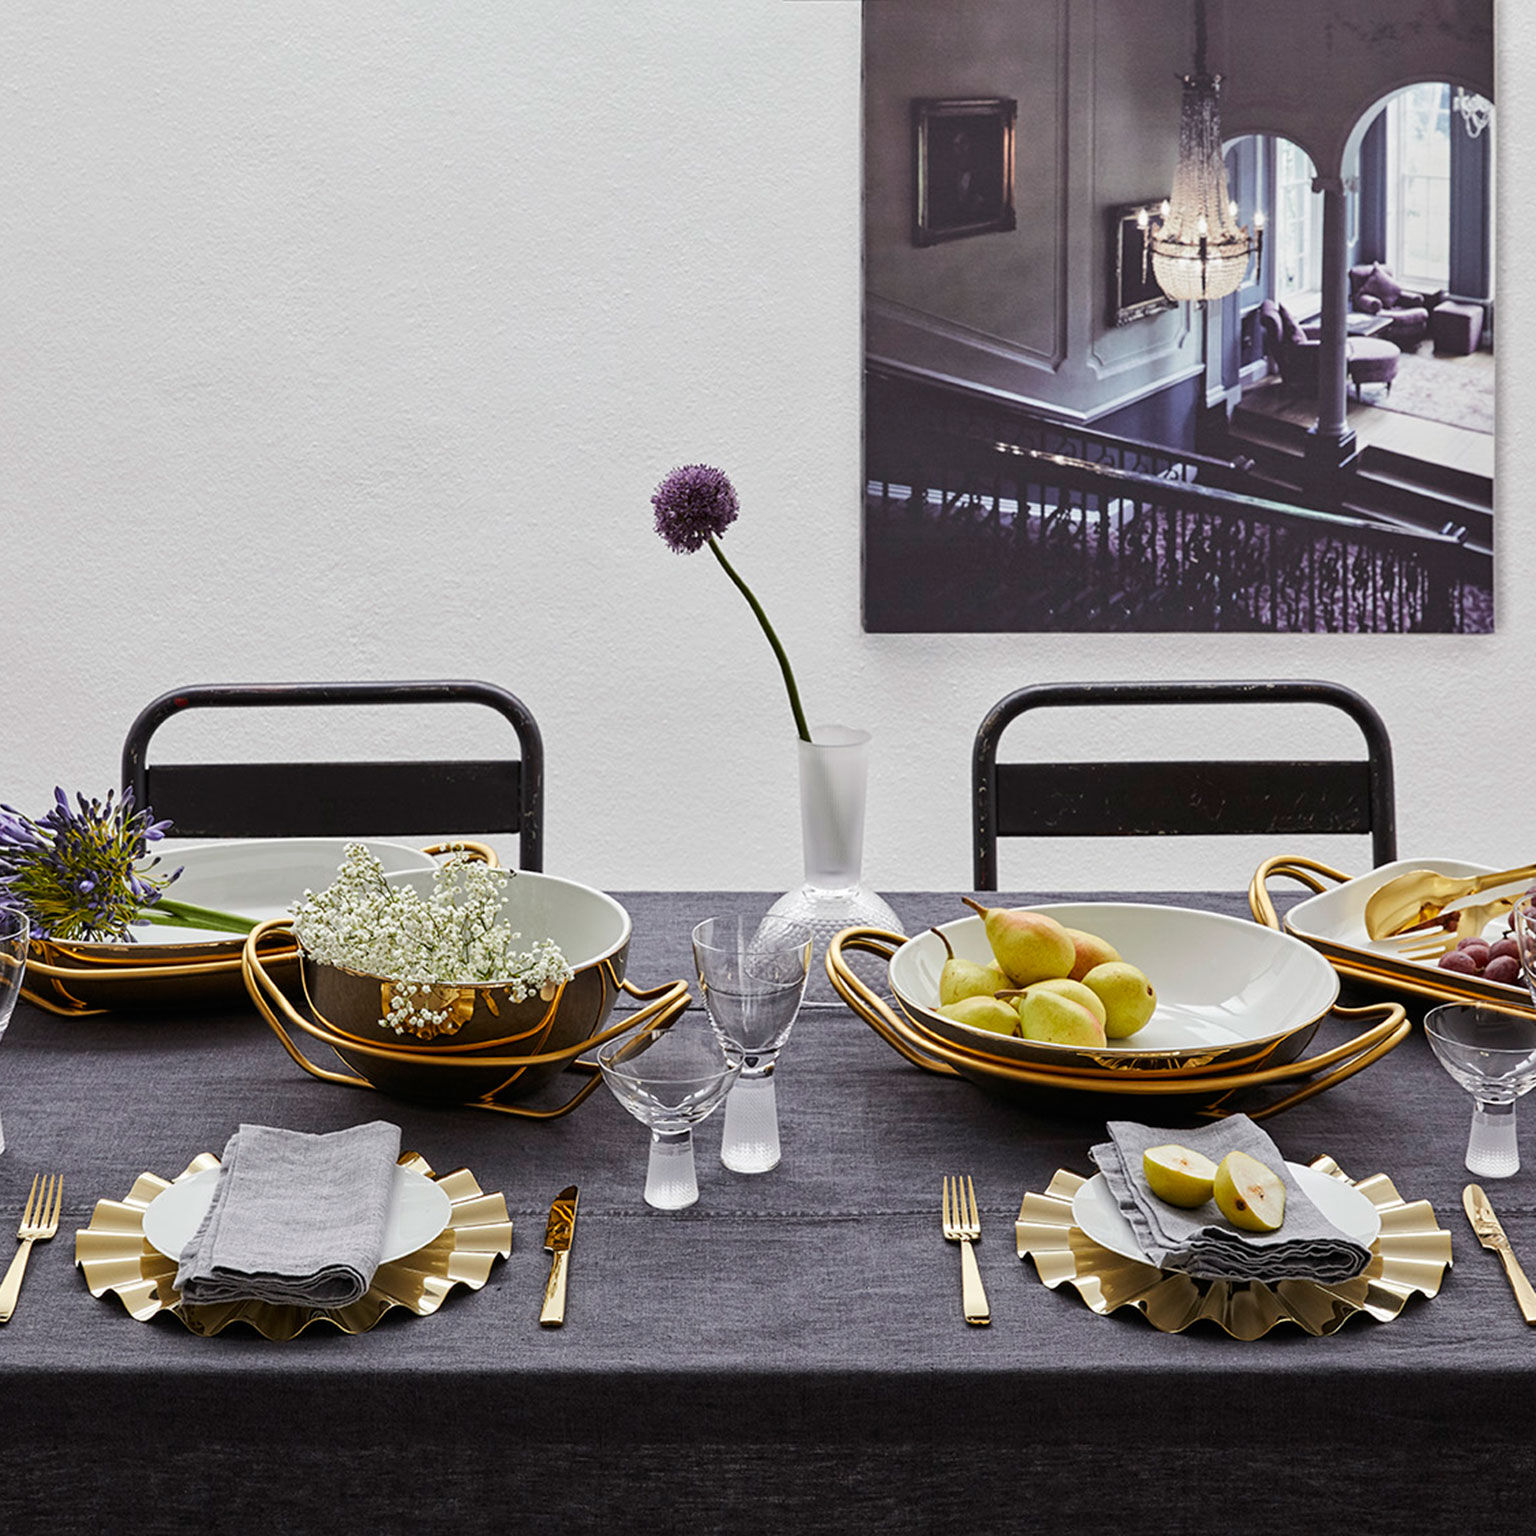 Elegante tavolo con set di piatti bianchi e neri, bicchieri da